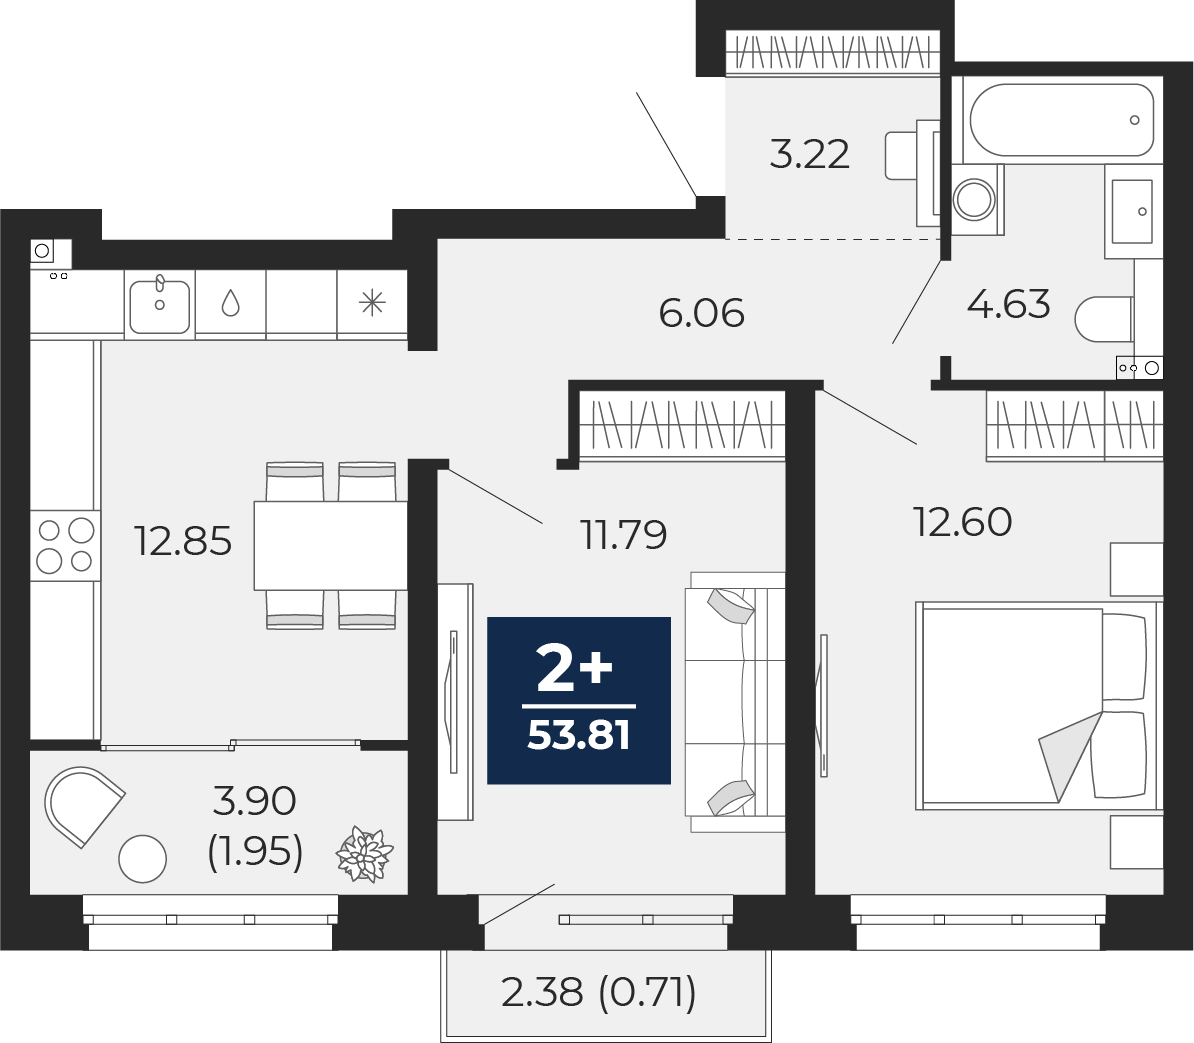 Квартира № 572, 2-комнатная, 53.81 кв. м, 6 этаж